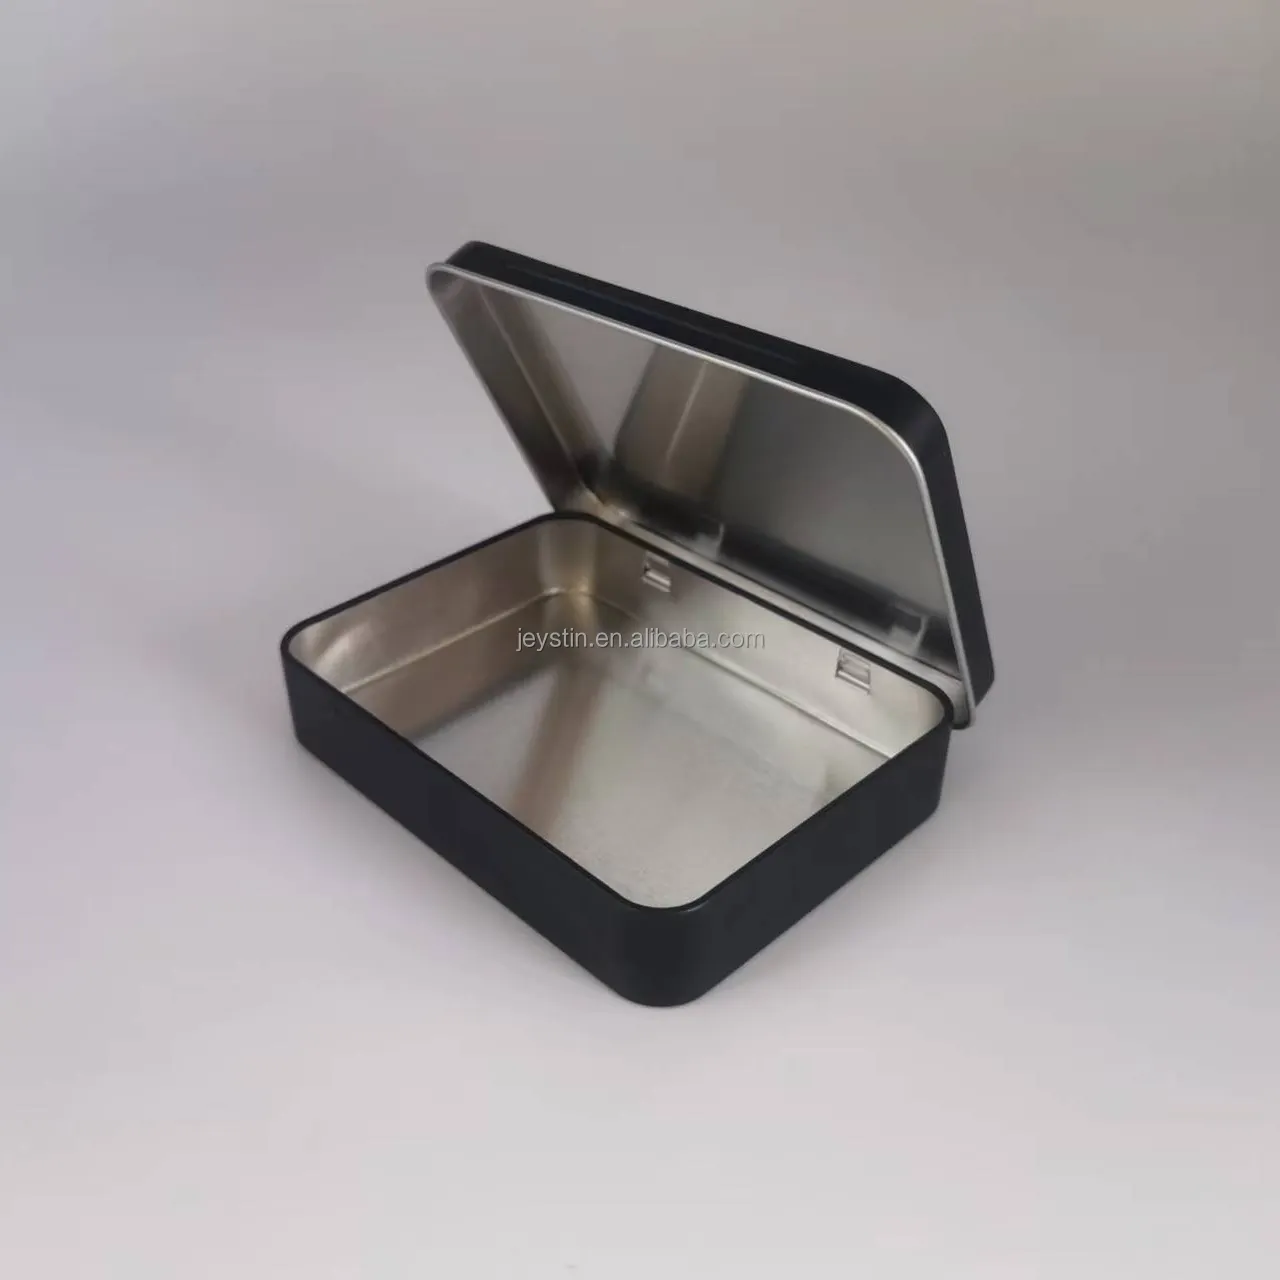 काले कस्टम आयताकार hinged ढक्कन के साथ टिन कर सकते हैं धातु पैकेजिंग टिन बॉक्स